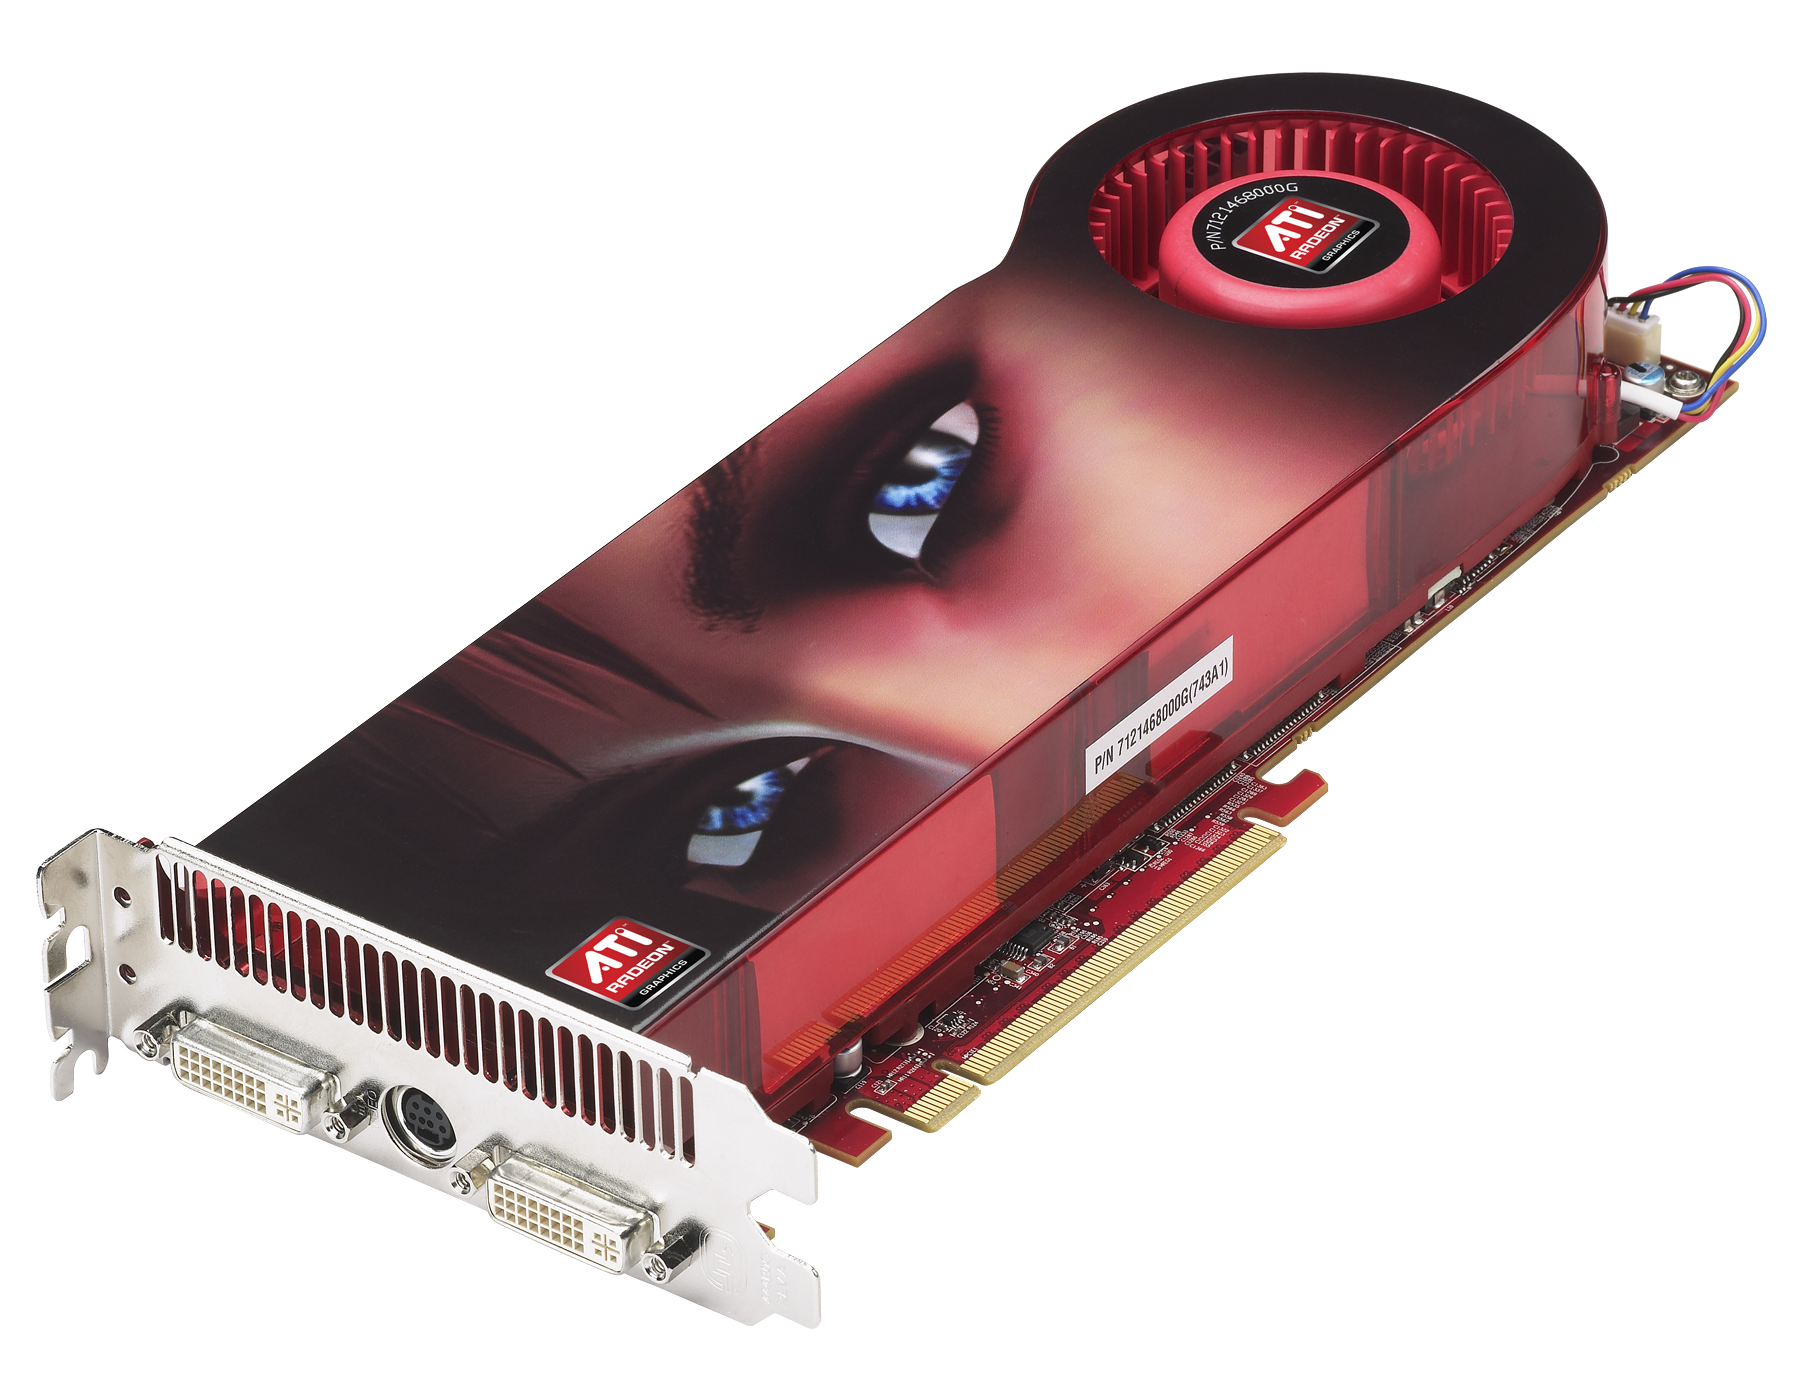 Immagine pubblicata in relazione al seguente contenuto: AMD lancia ufficialmente la gpu ATI Radeon HD 3870 X2 | Nome immagine: news6699_1.jpg